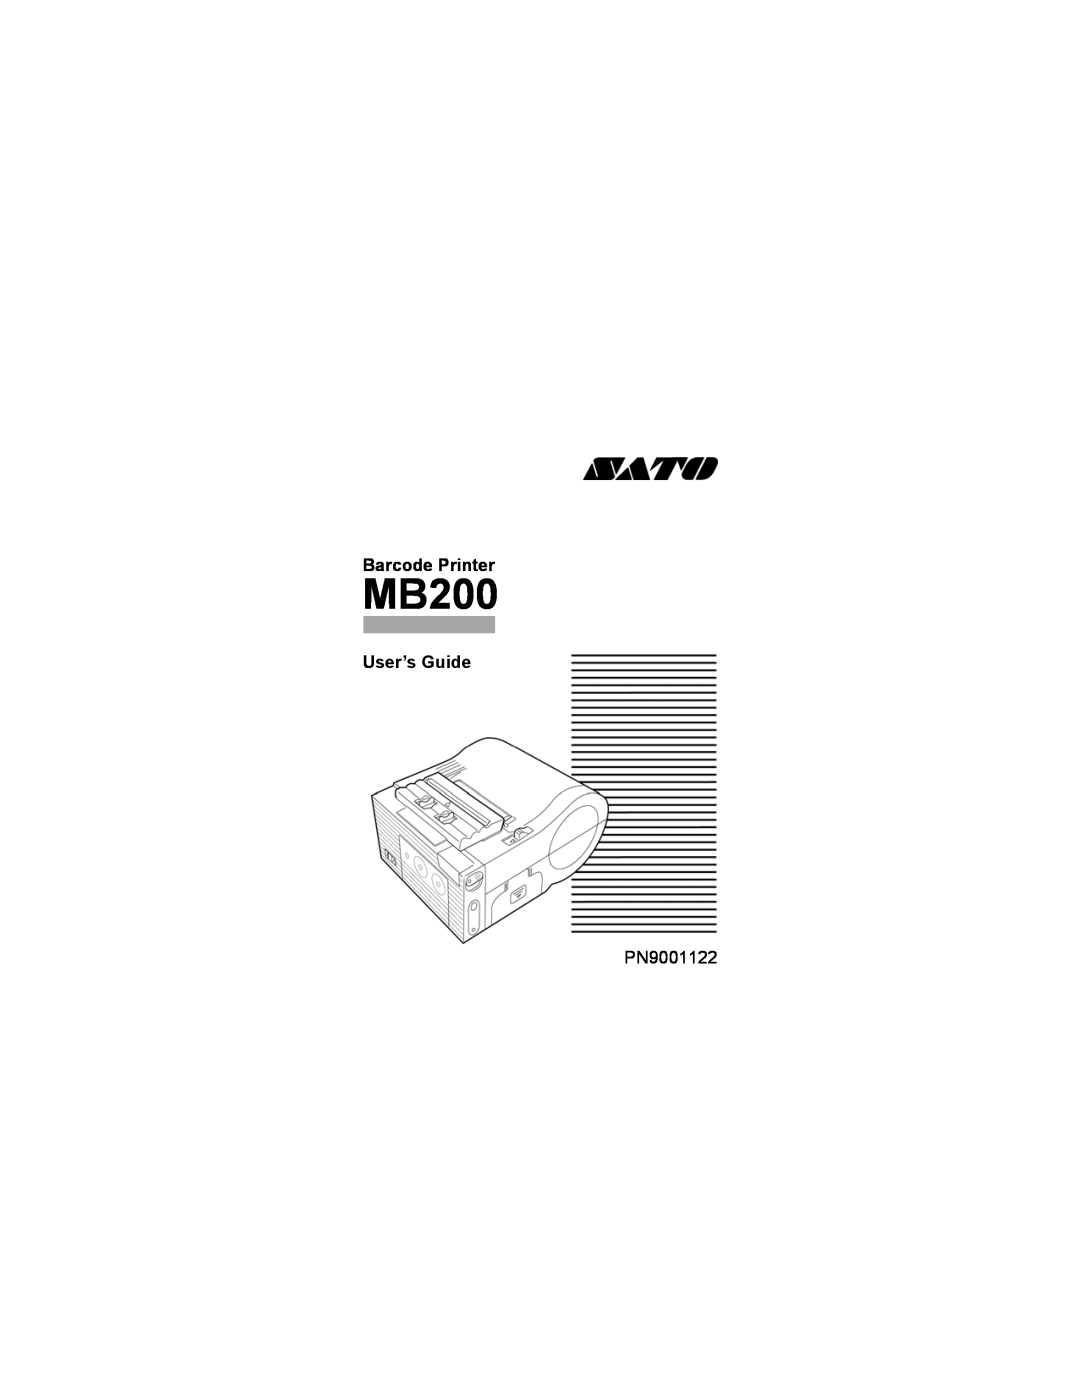 SATO MB200 manual Barcode Printer, User’s Guide, PN9001122 